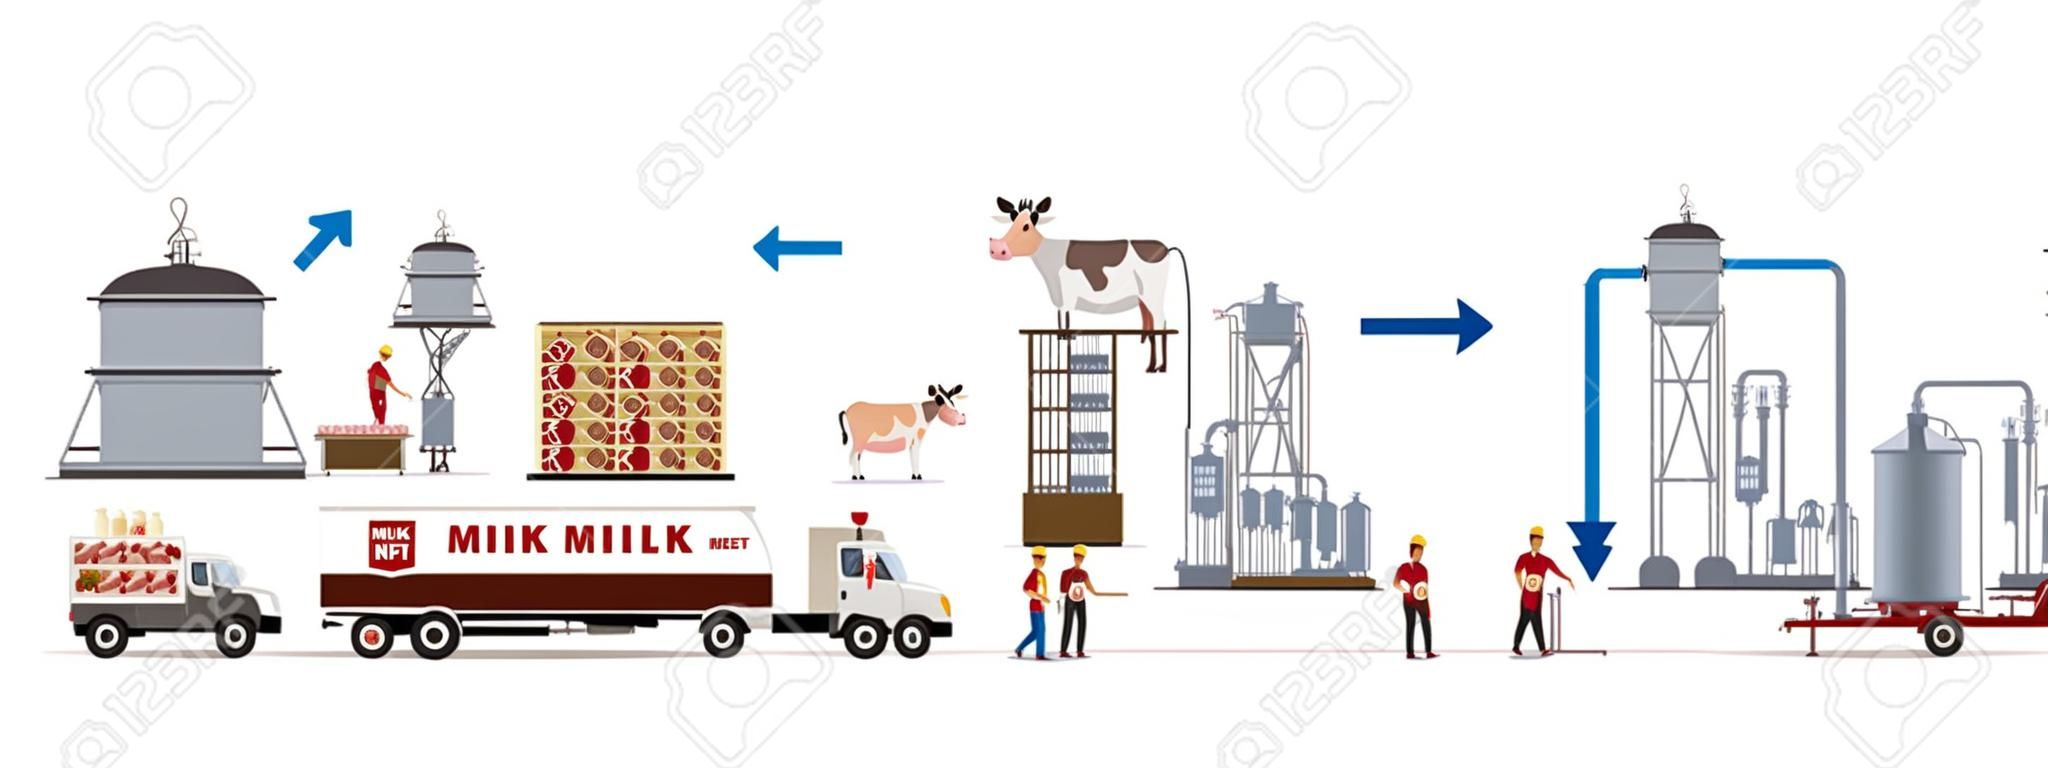 Usine de lait et de viande avec machines automatiques et ouvriers. Illustration vectorielle.